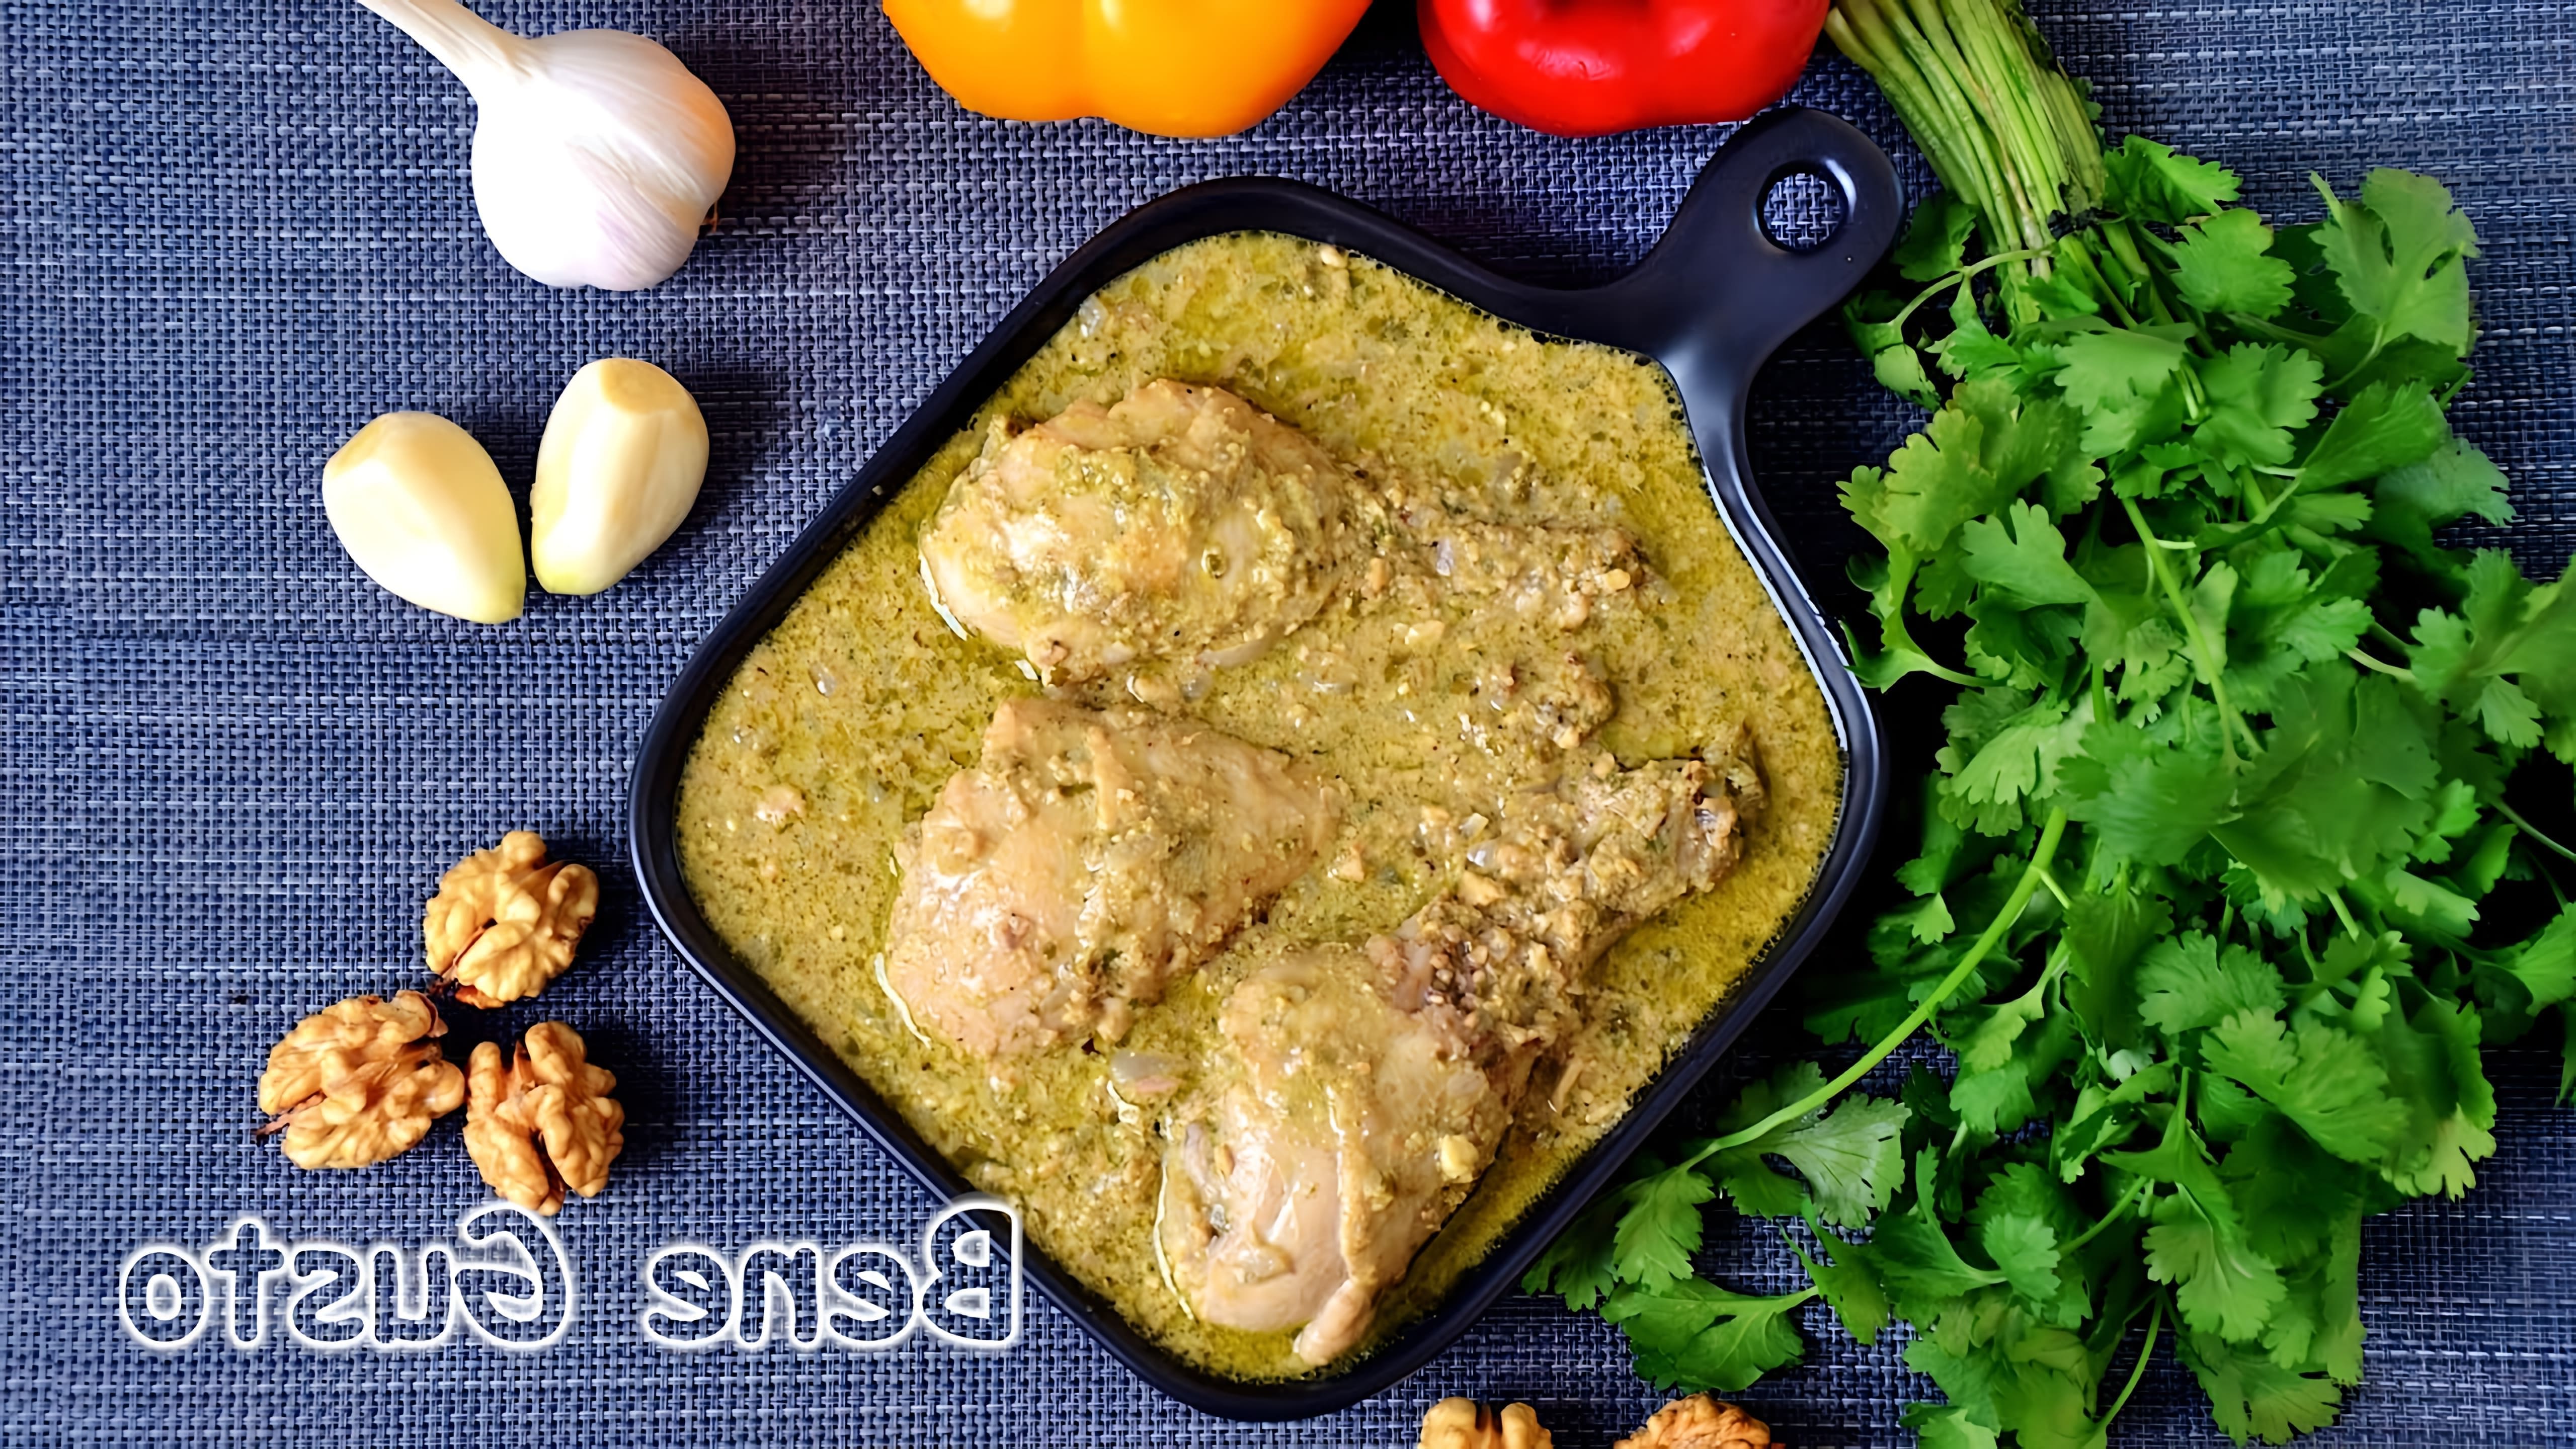 В этом видео демонстрируется процесс приготовления сациви из курицы с грецкими орехами по рецепту Bene Gusto